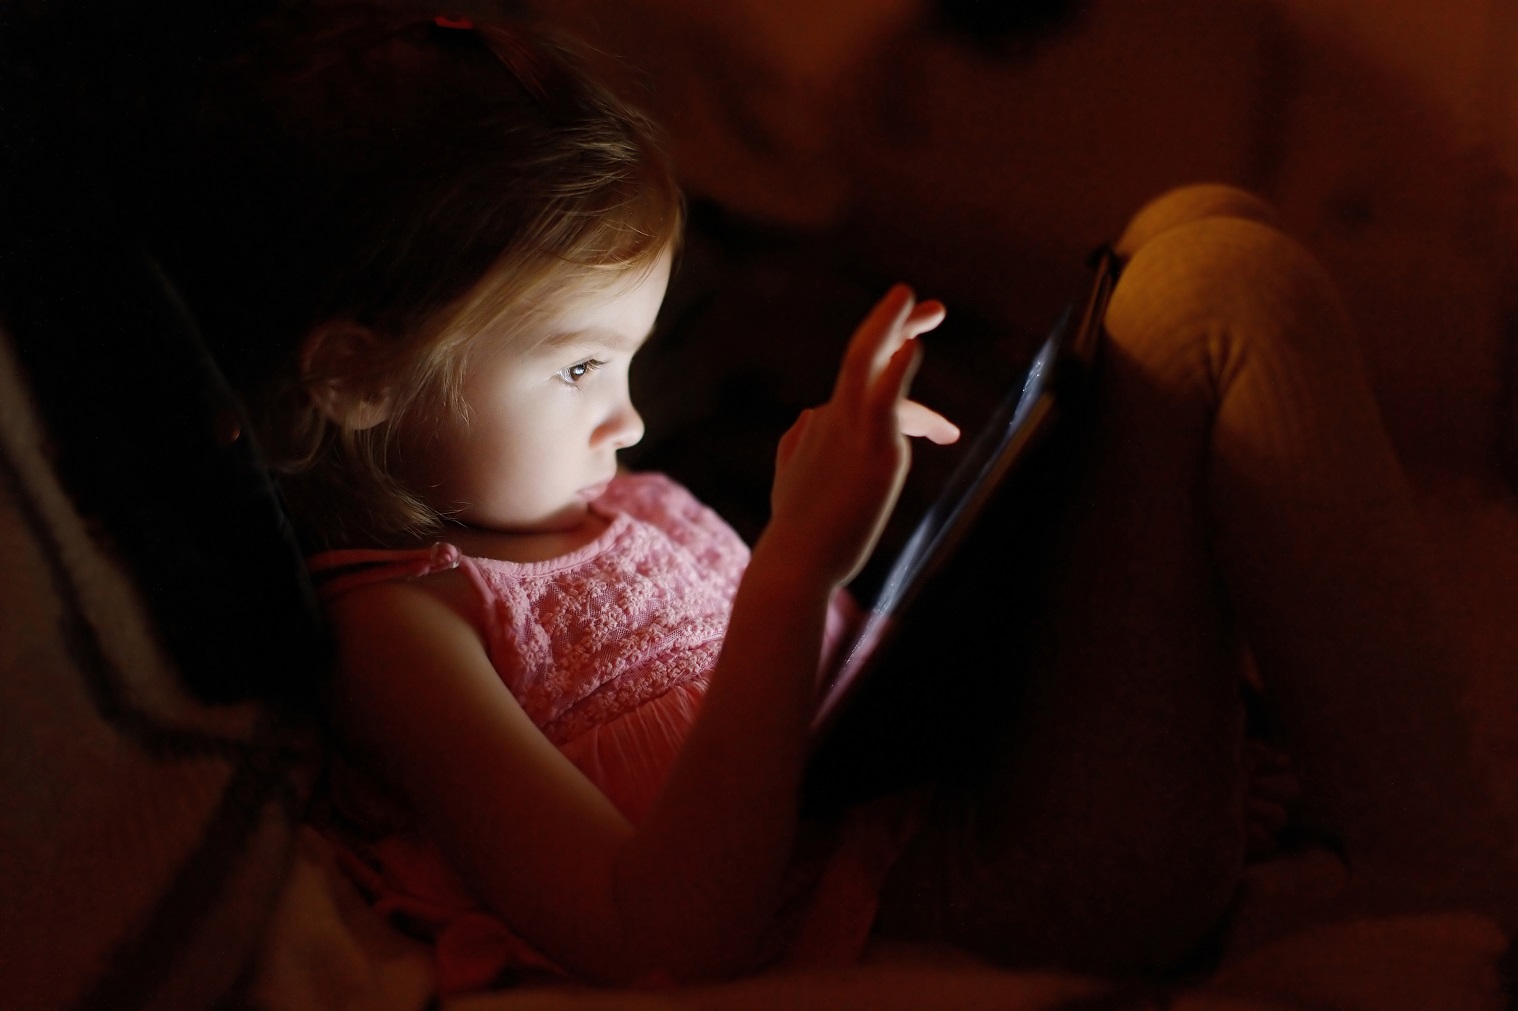 مخاطر التقنيات الحديثة على الأطفال